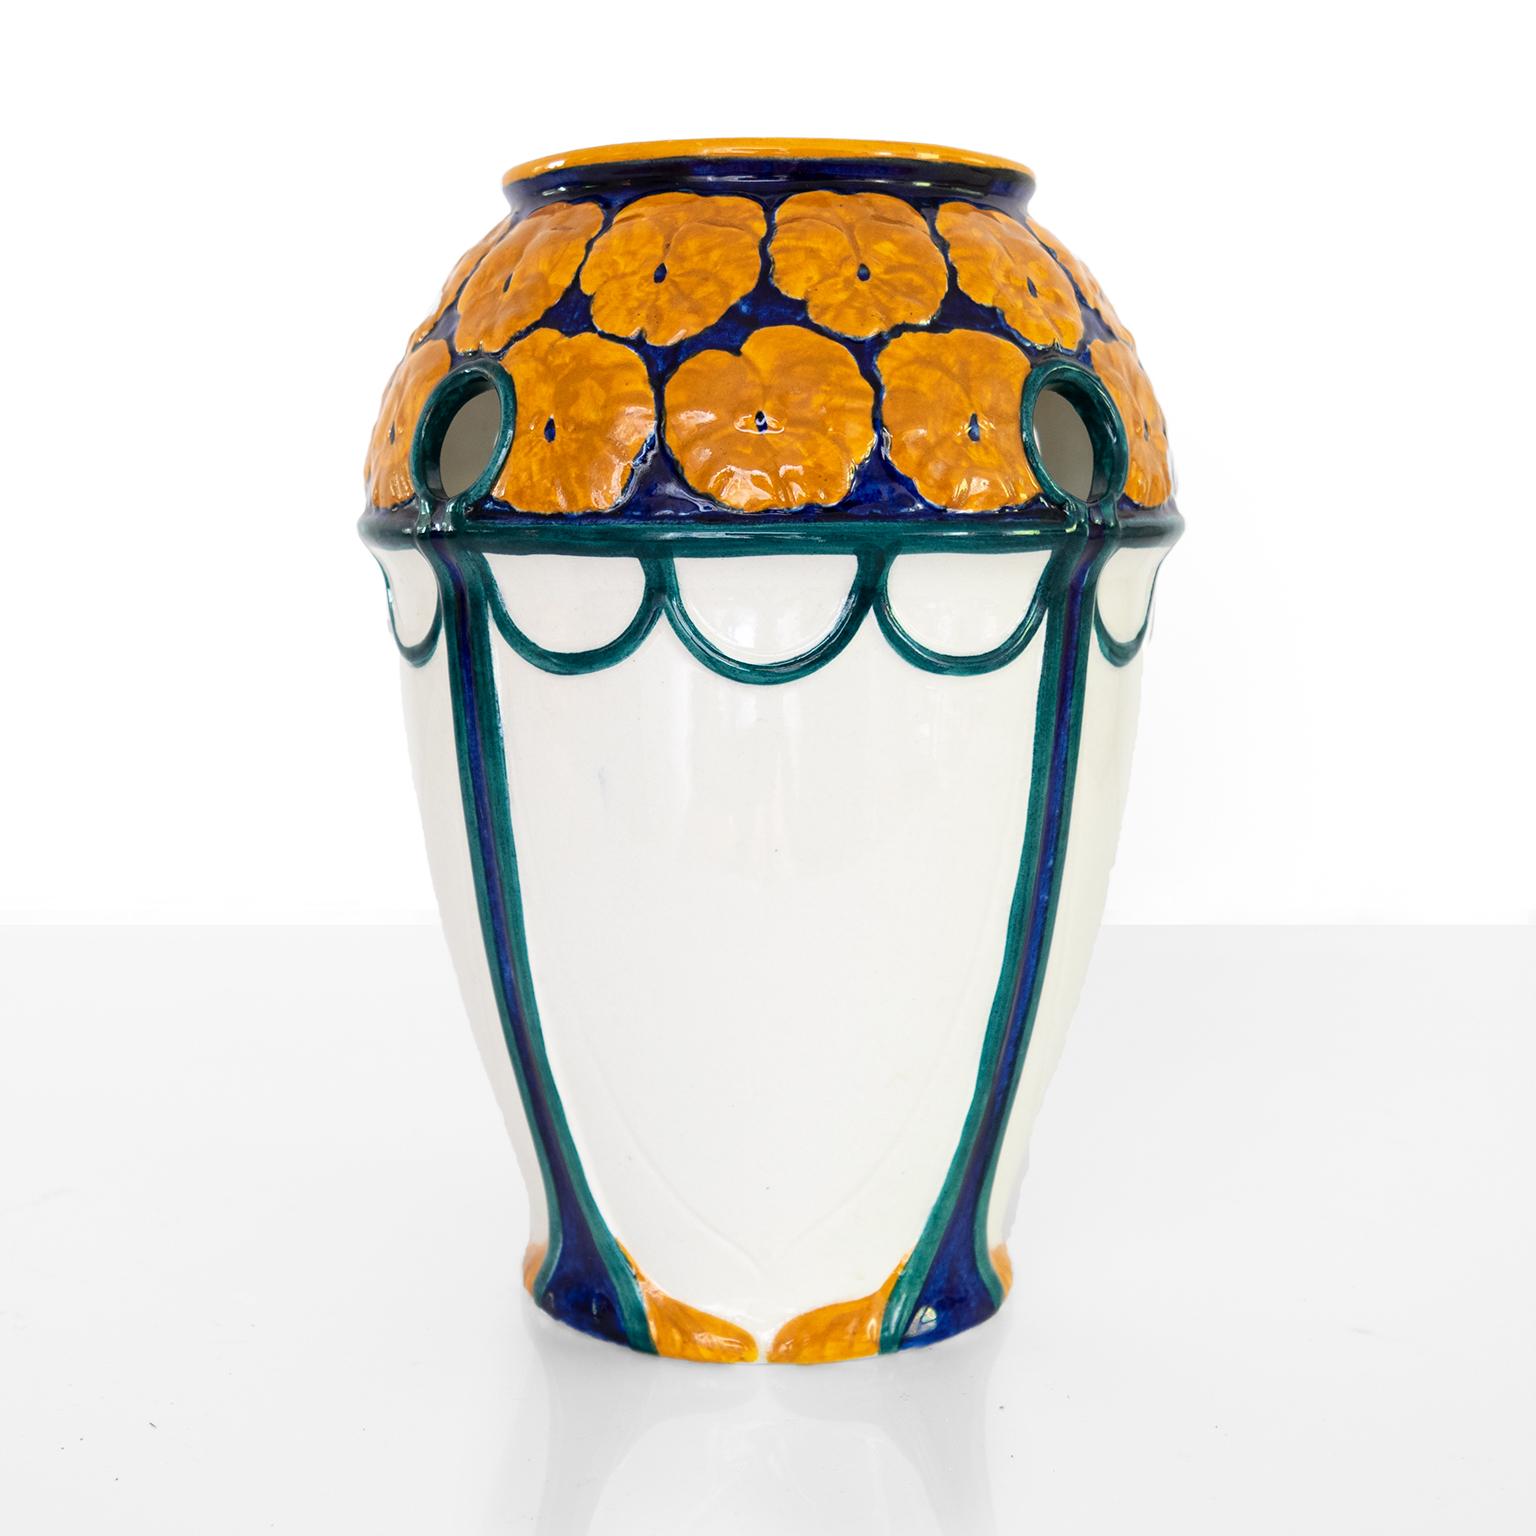 Vase suédois d'époque Art nouveau avec une couronne de fleurs orange sur un fond bleu profond. Le vase présente de petites ouvertures rondes le long du sommet. Conçu par Alf Wallander et fabriqué par Rorstrand, vers 1910. 

Mesure : Hauteur :